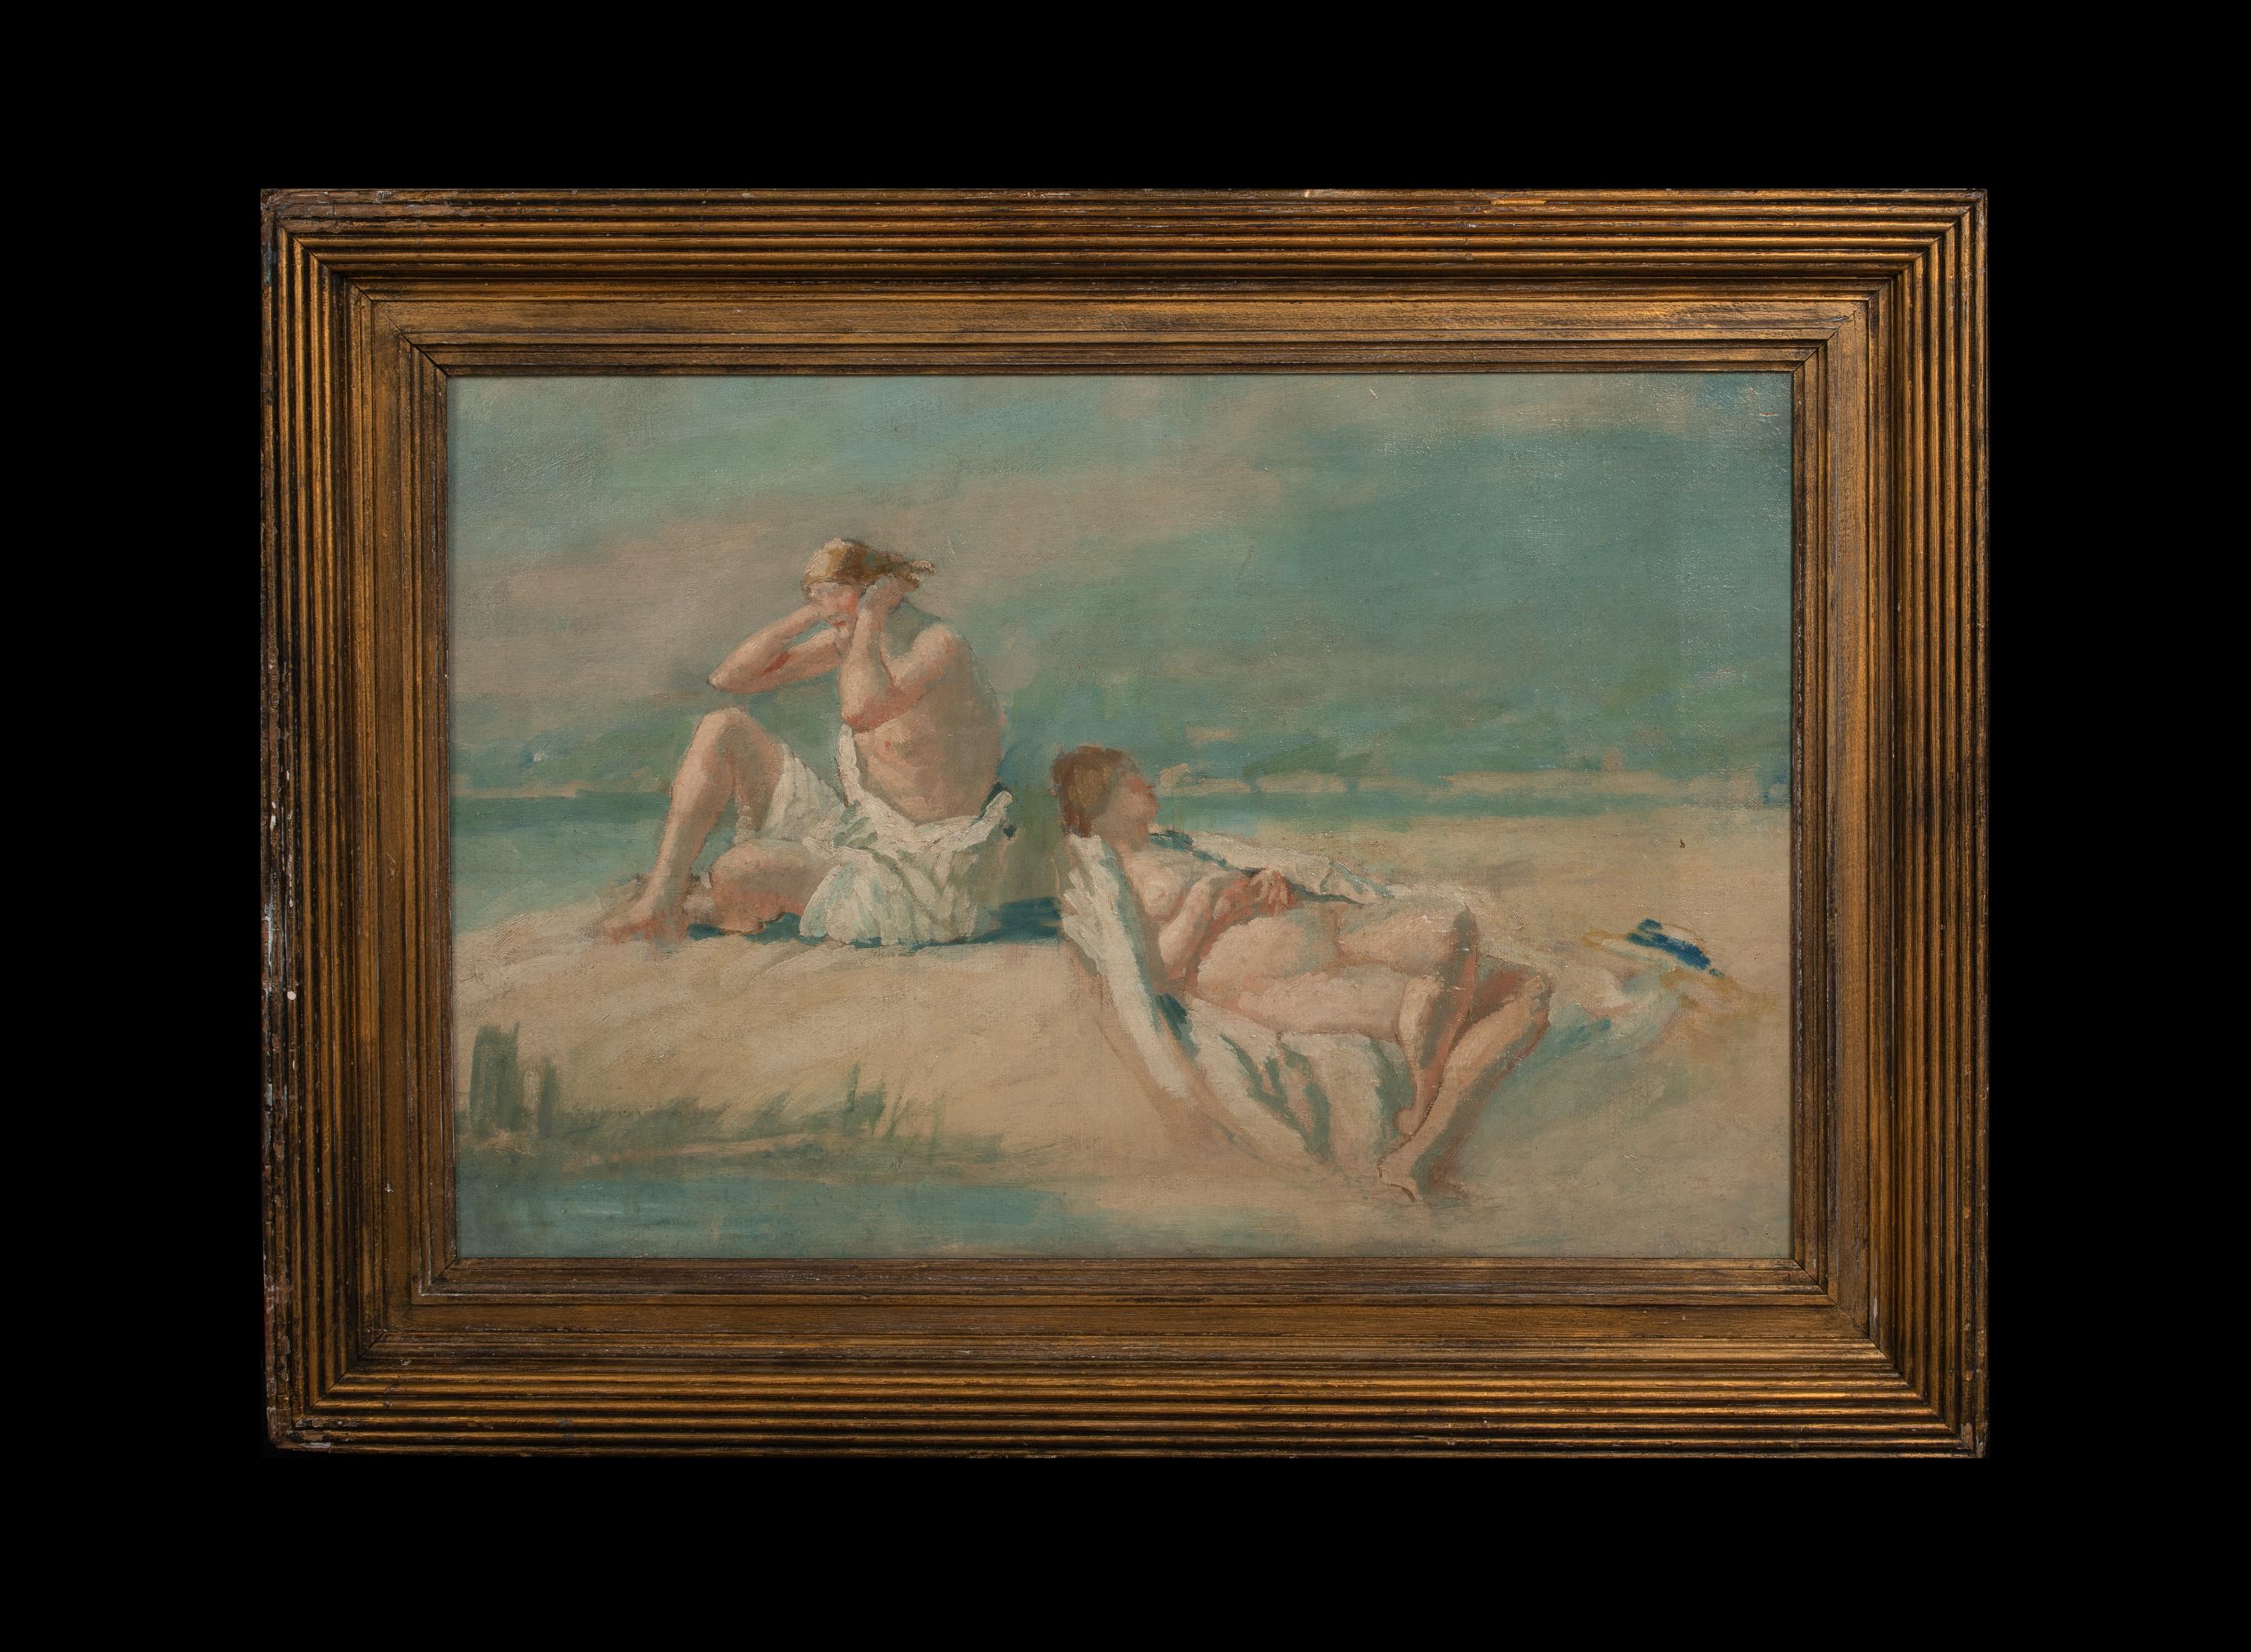 Akt beim Sonnenbaden am Strand, 19. Jahrhundert  Kreis der PHILIP WILSON STEER – Painting von Unknown